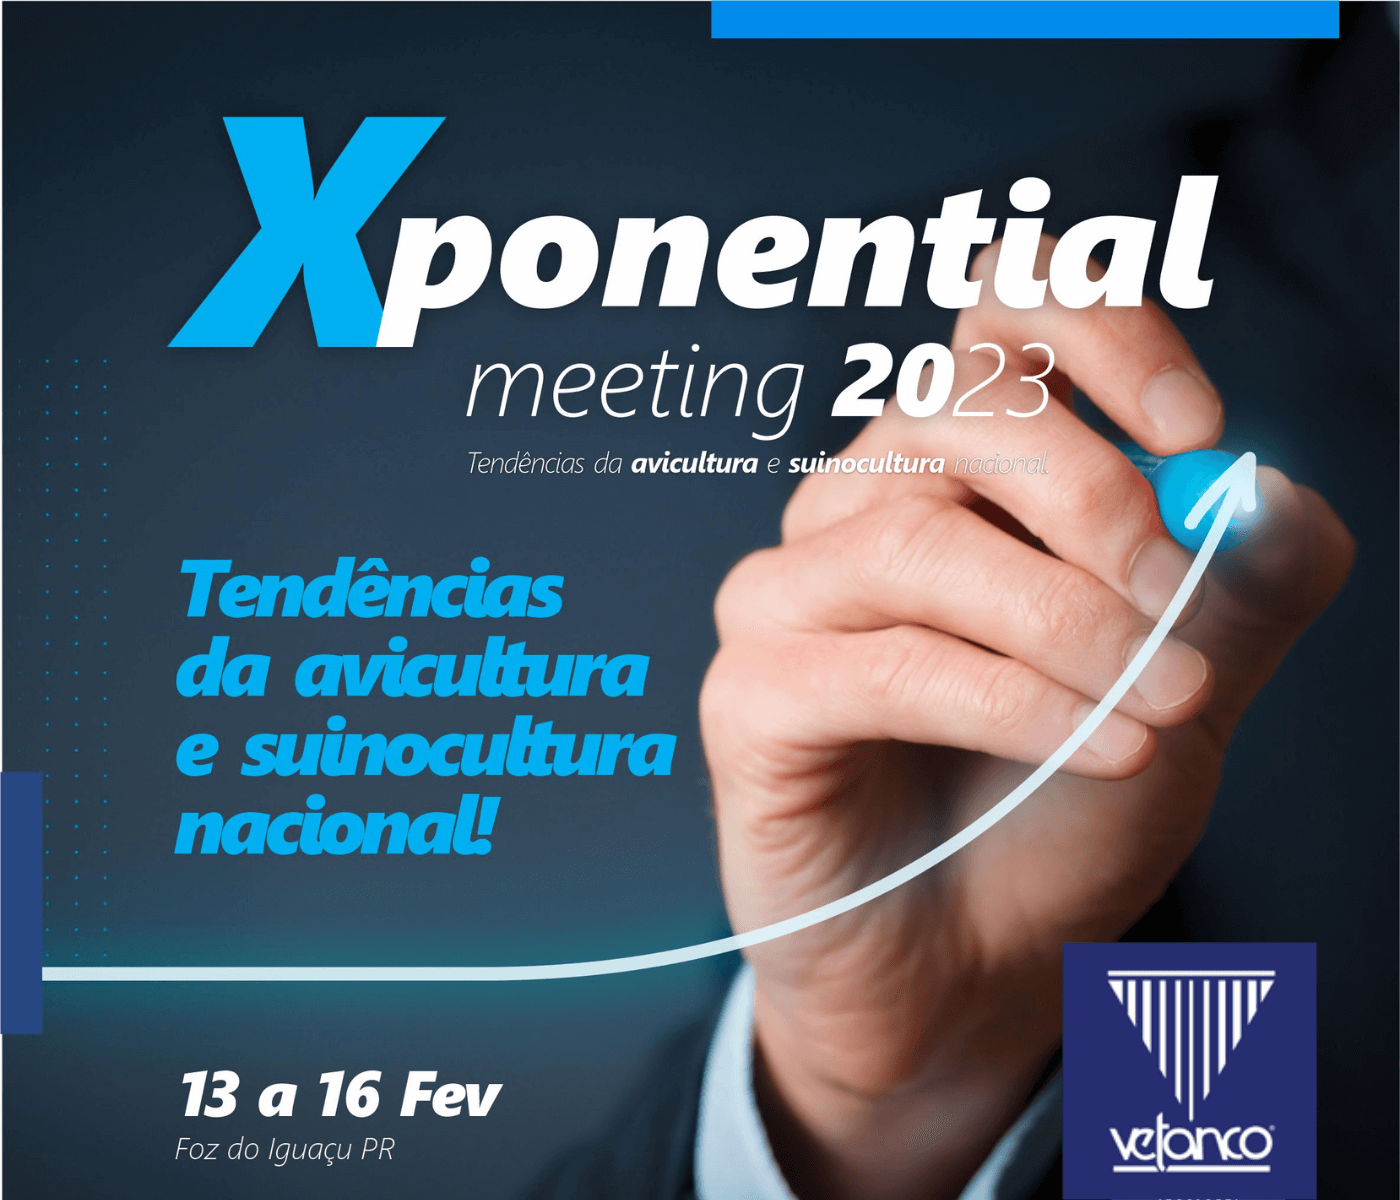 Xponential Meeting Vetanco retorna com informações exponenciais sobre mercado, tendências e perspectivas